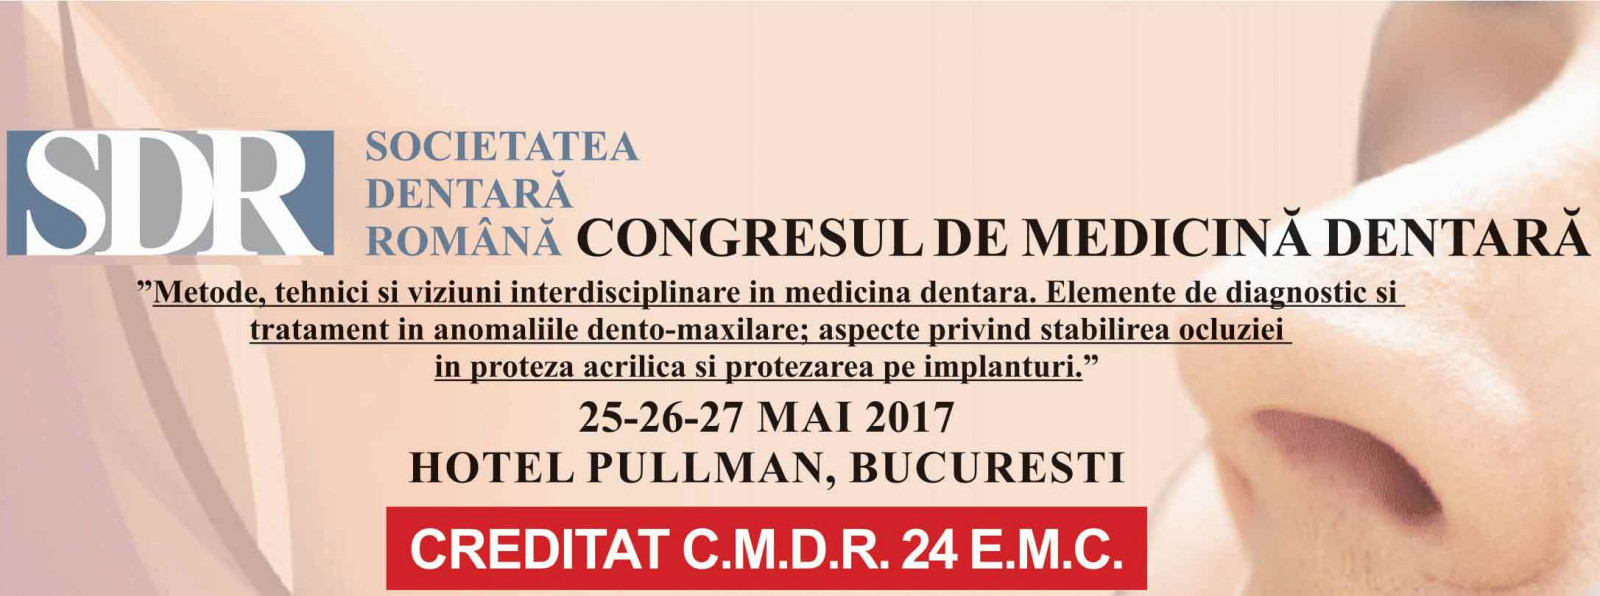 Congres Medicina Dentara S.D.R. 2017 - creditat 24 EMC